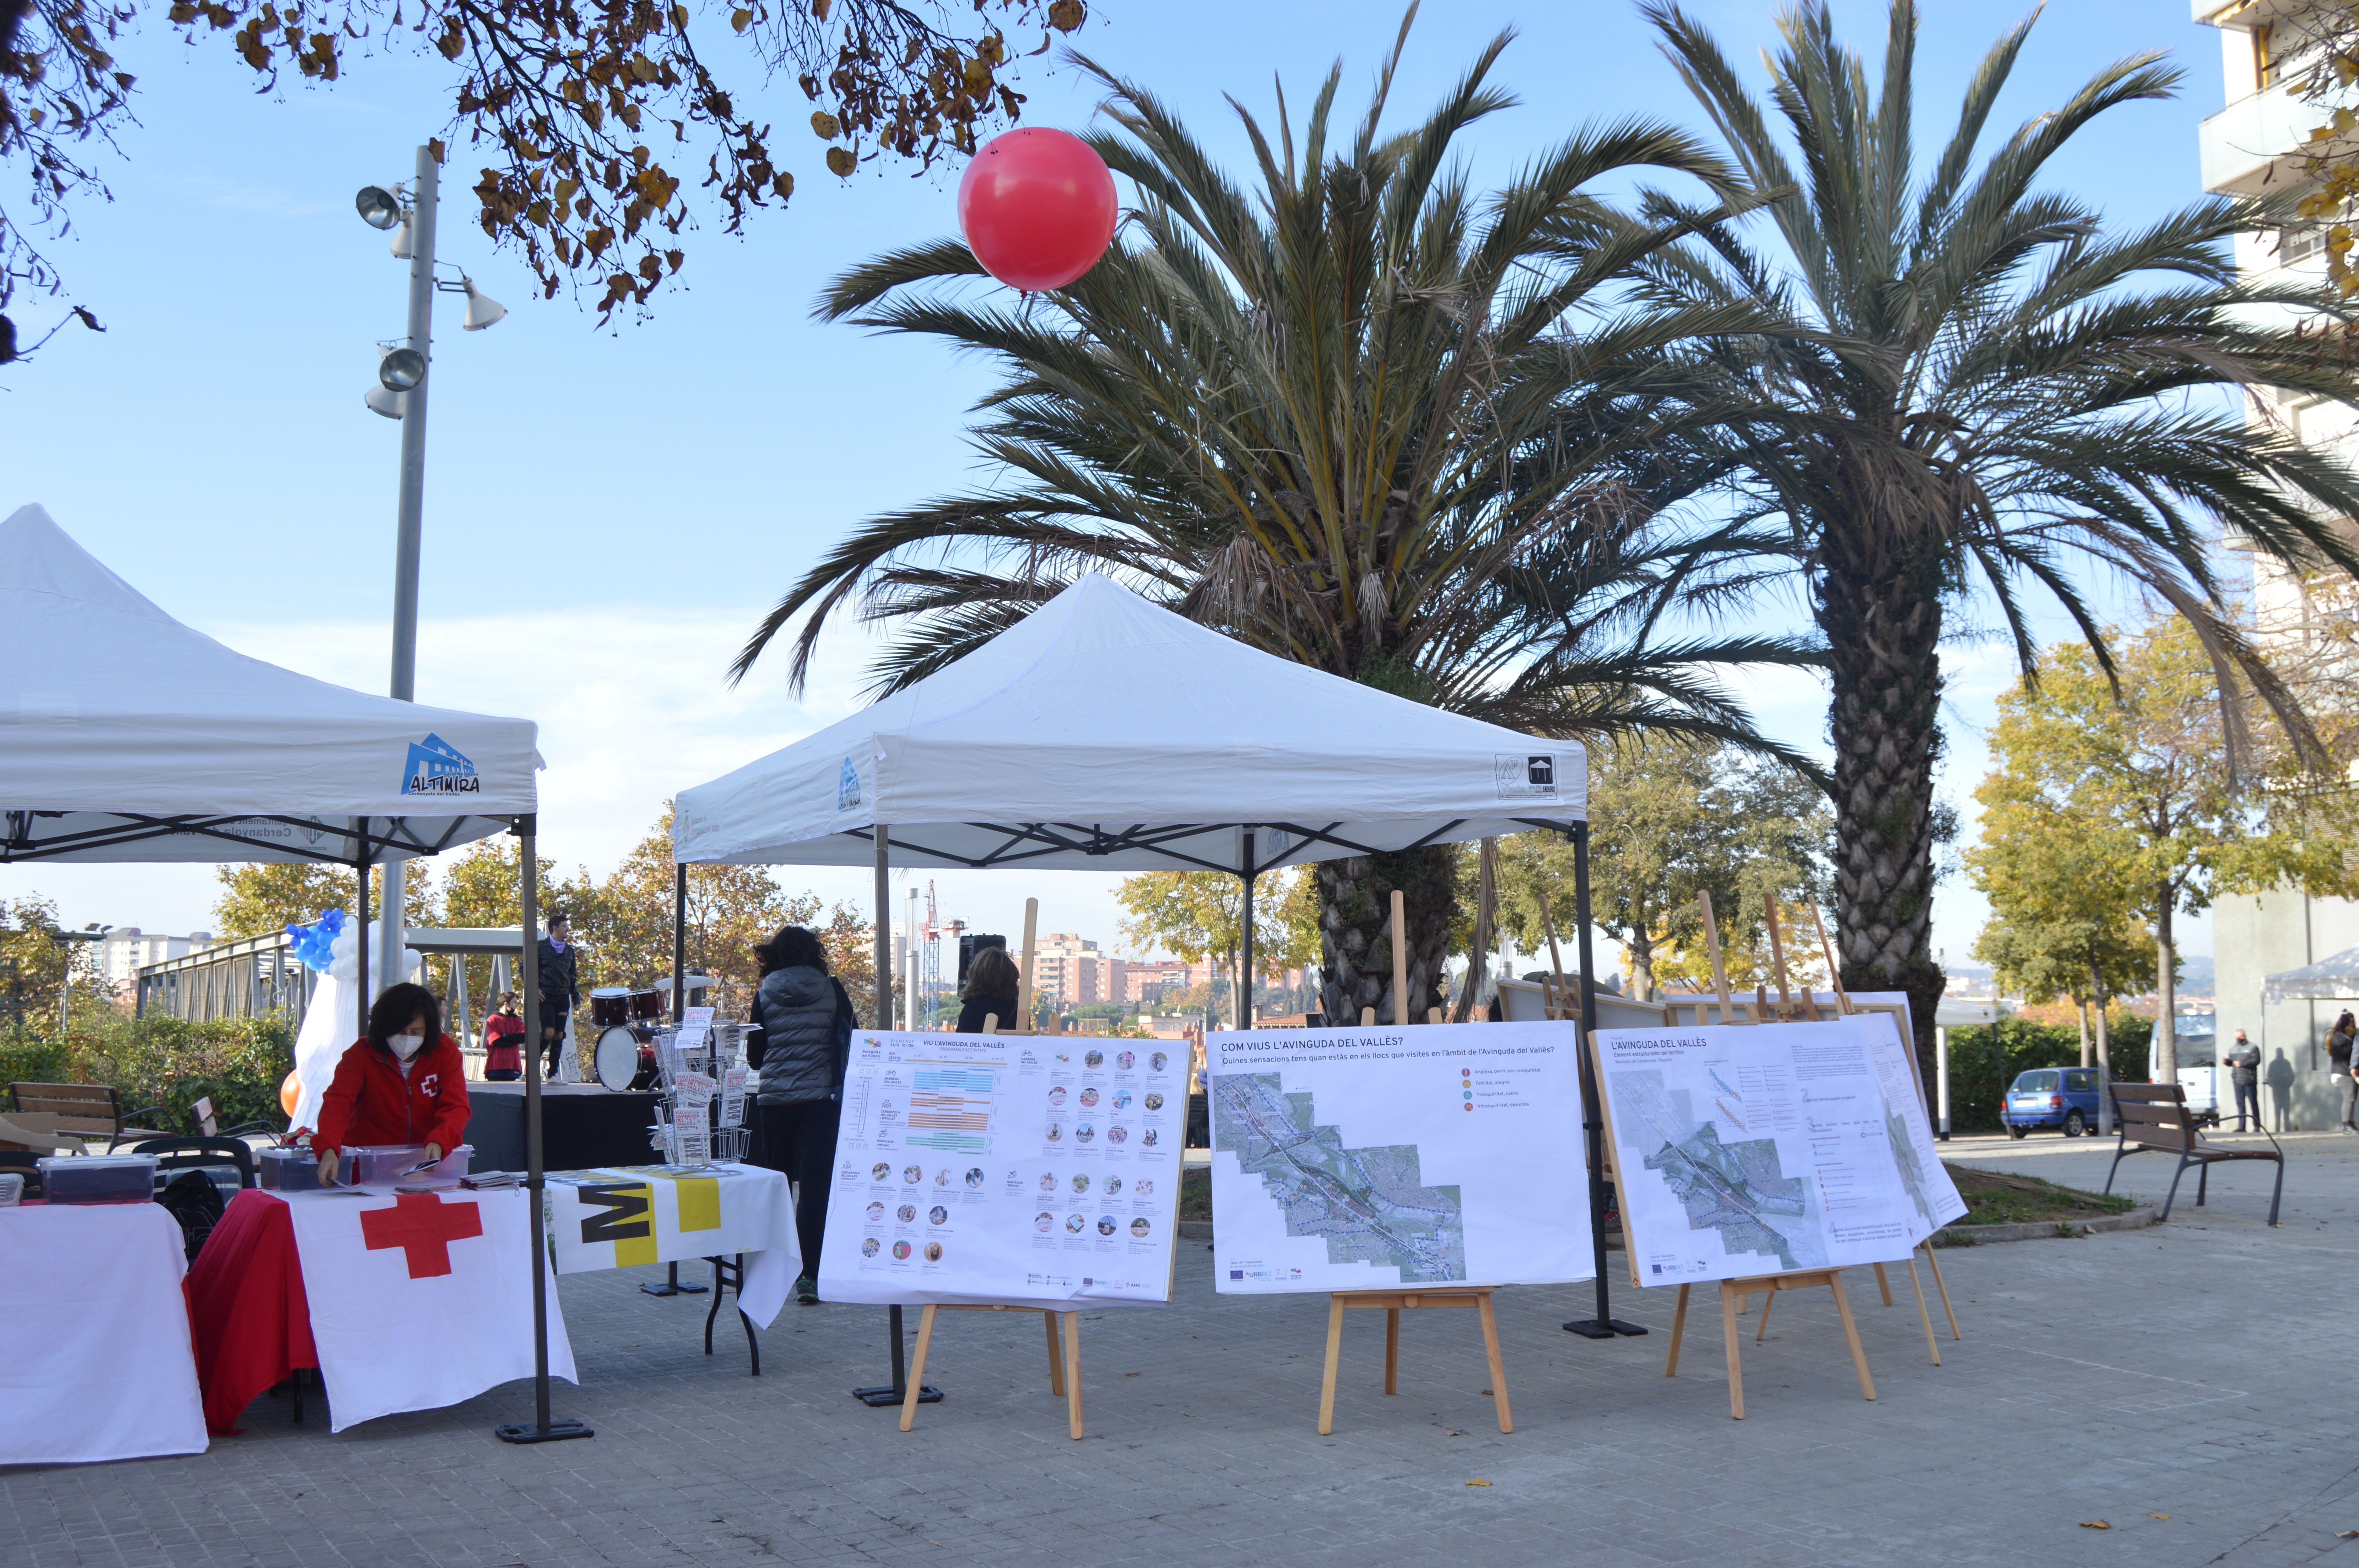 S'ha disposat un espai informatiu sobre la proposta de l'Avinguda del Vallès a la festa de la N-150. FOTO: Nora Muñoz Otero